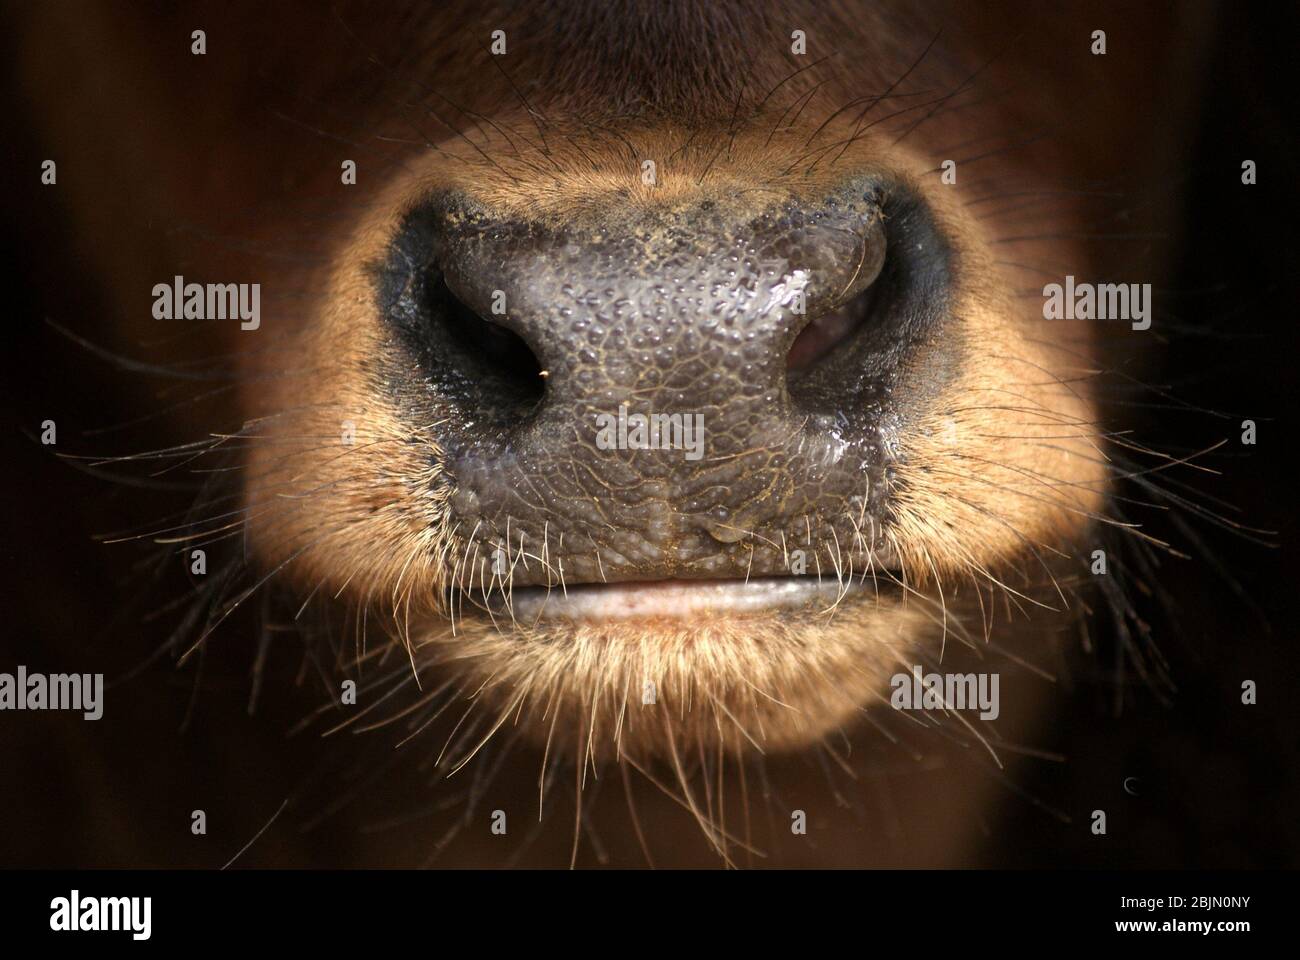 Nahaufnahme der Nase eines jungen roten spanischen Stierkalbs. Nasenlöcher, Schnauzenstruktur und Lippen des Mundes Stockfoto